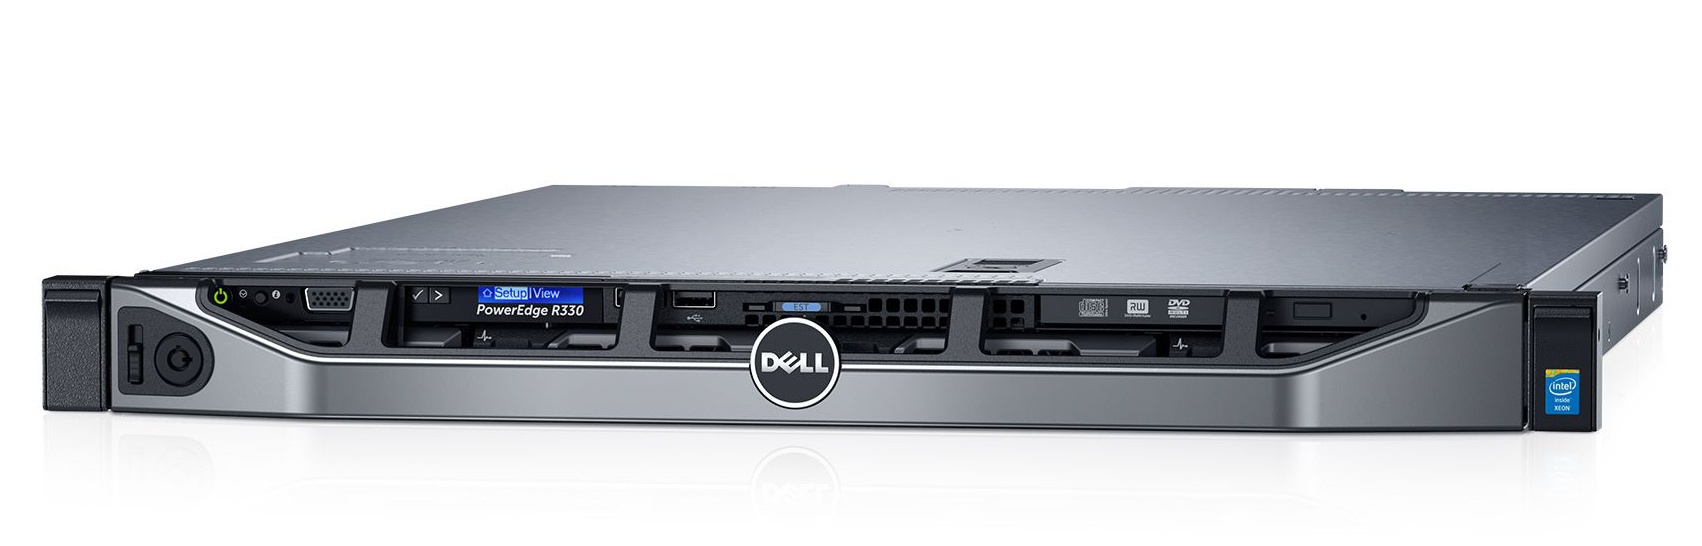 Dell PowerEdge R330 và R340 - Hai dòng máy chủ Rack 1U tối ưu cho doanh nghiệp vừa và nhỏ